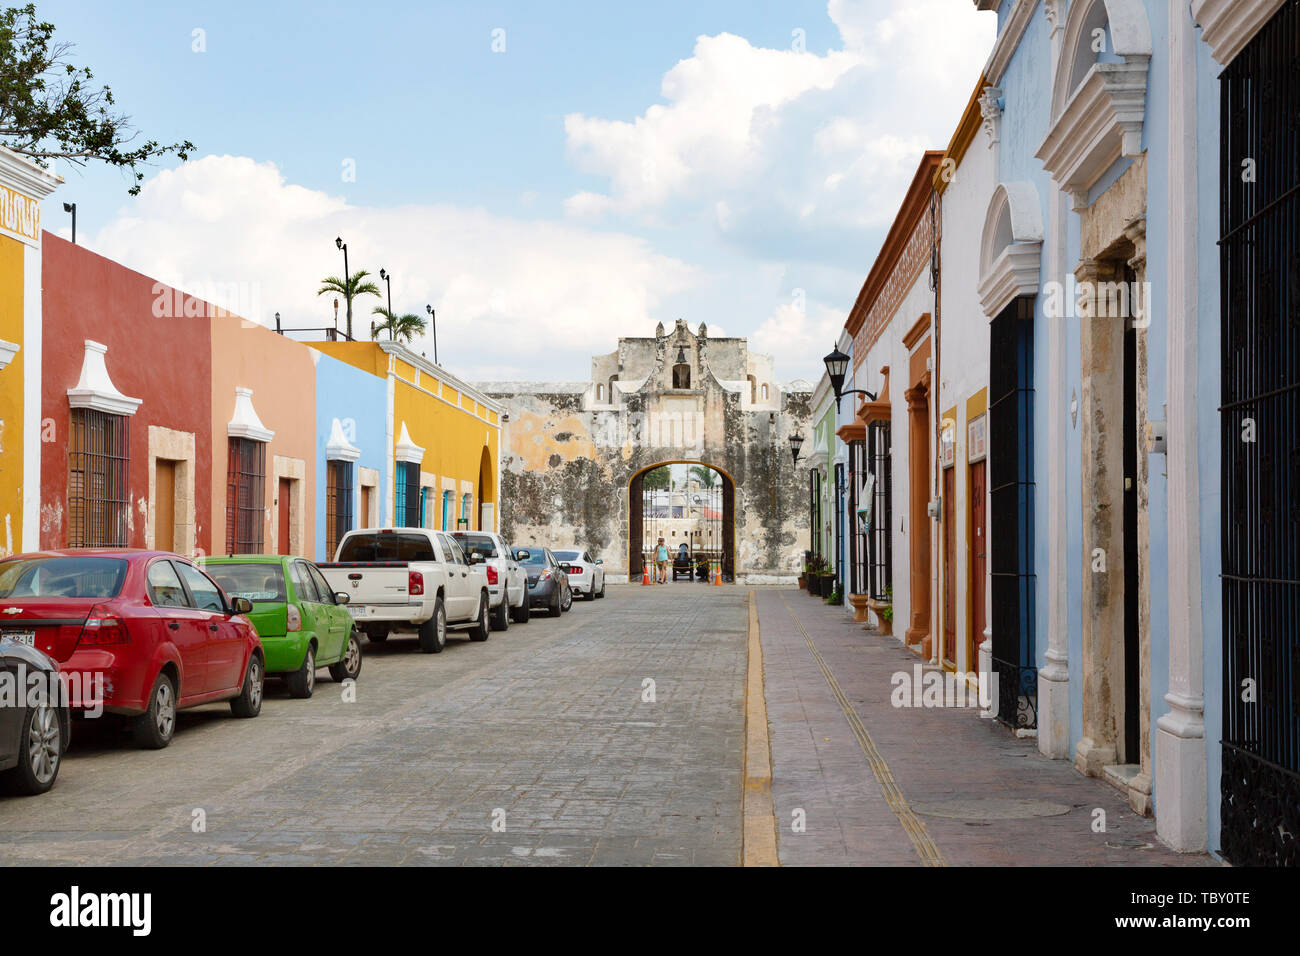 Campeche Mexique - bâtiments colorés et street dans la vieille ville de Campeche, UNESCO World Heritage site, Campeche, Yucatan Mexique Amérique Centrale billet Banque D'Images